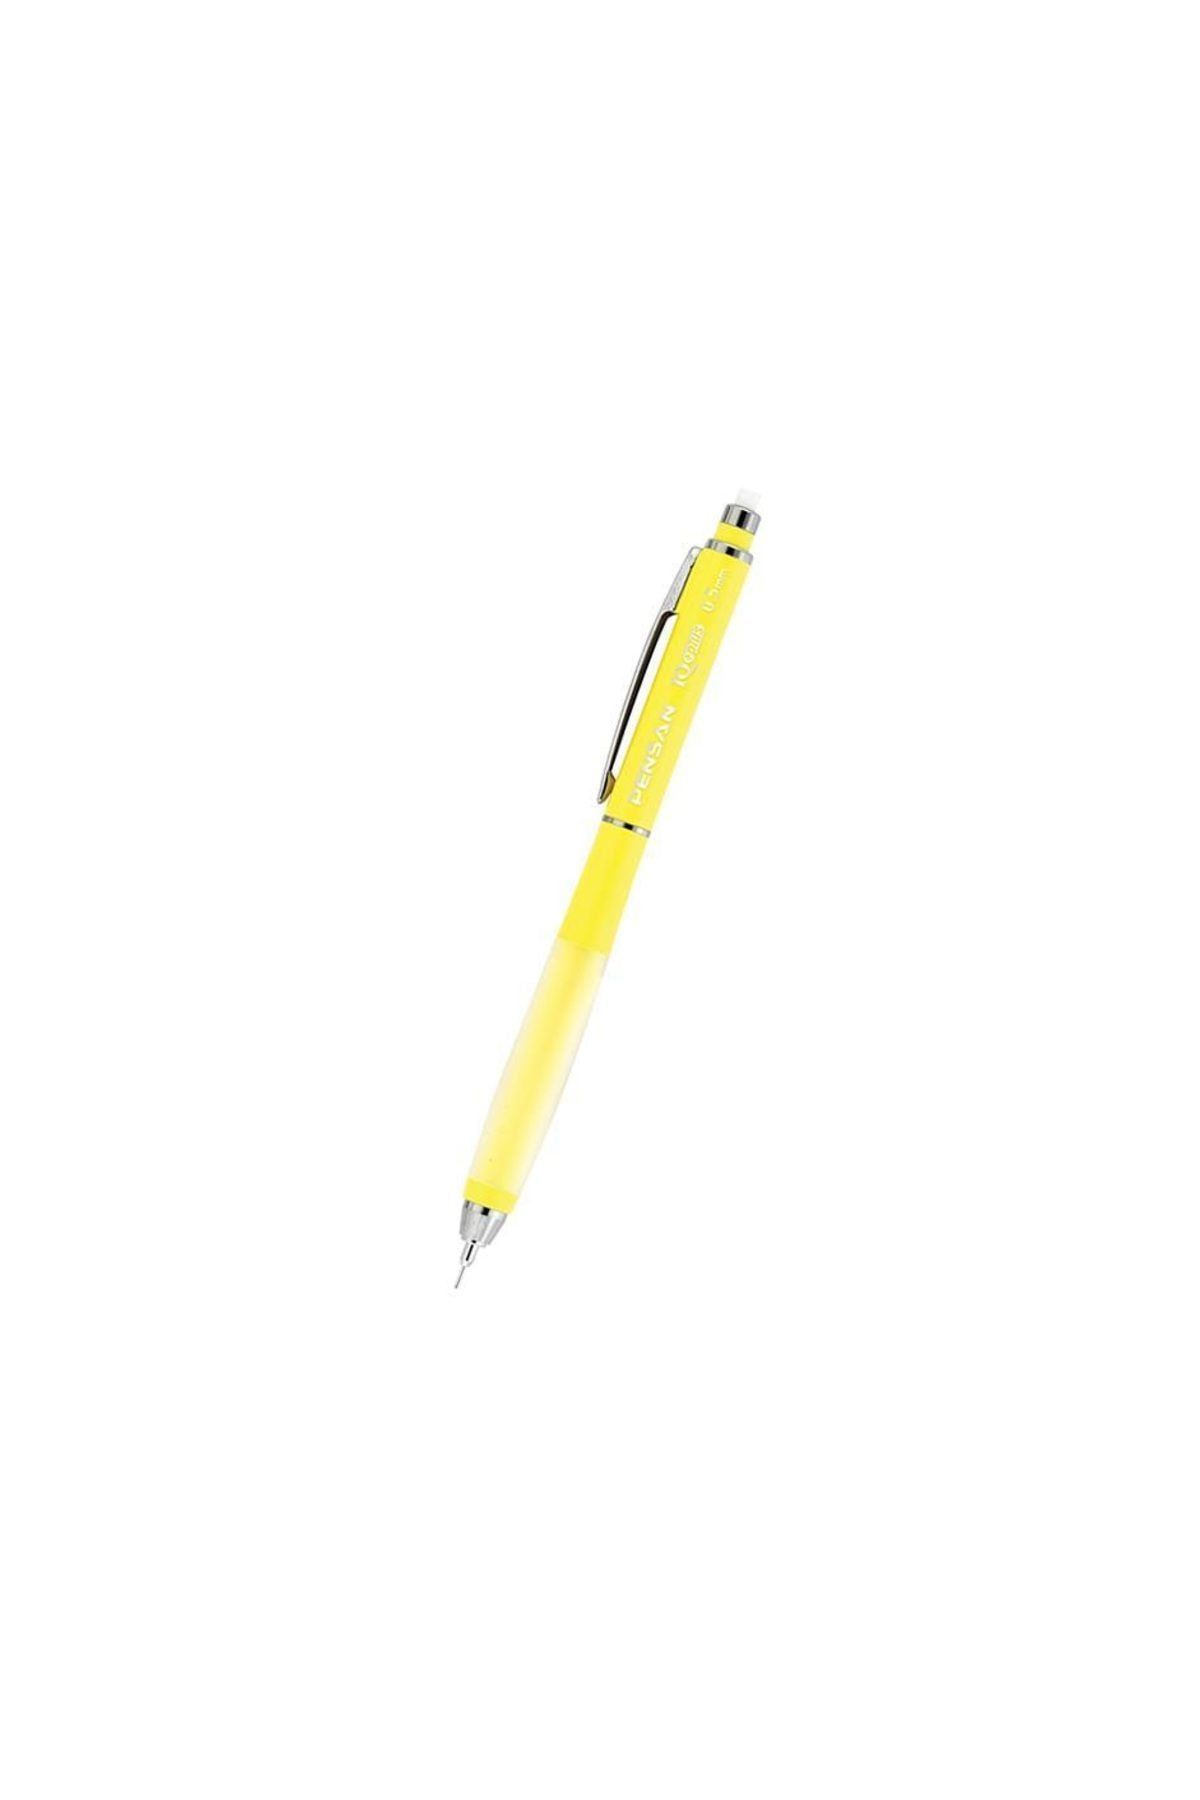 Pensan Iq Plus Versatil Kalem 0.5 (21130) Sarı